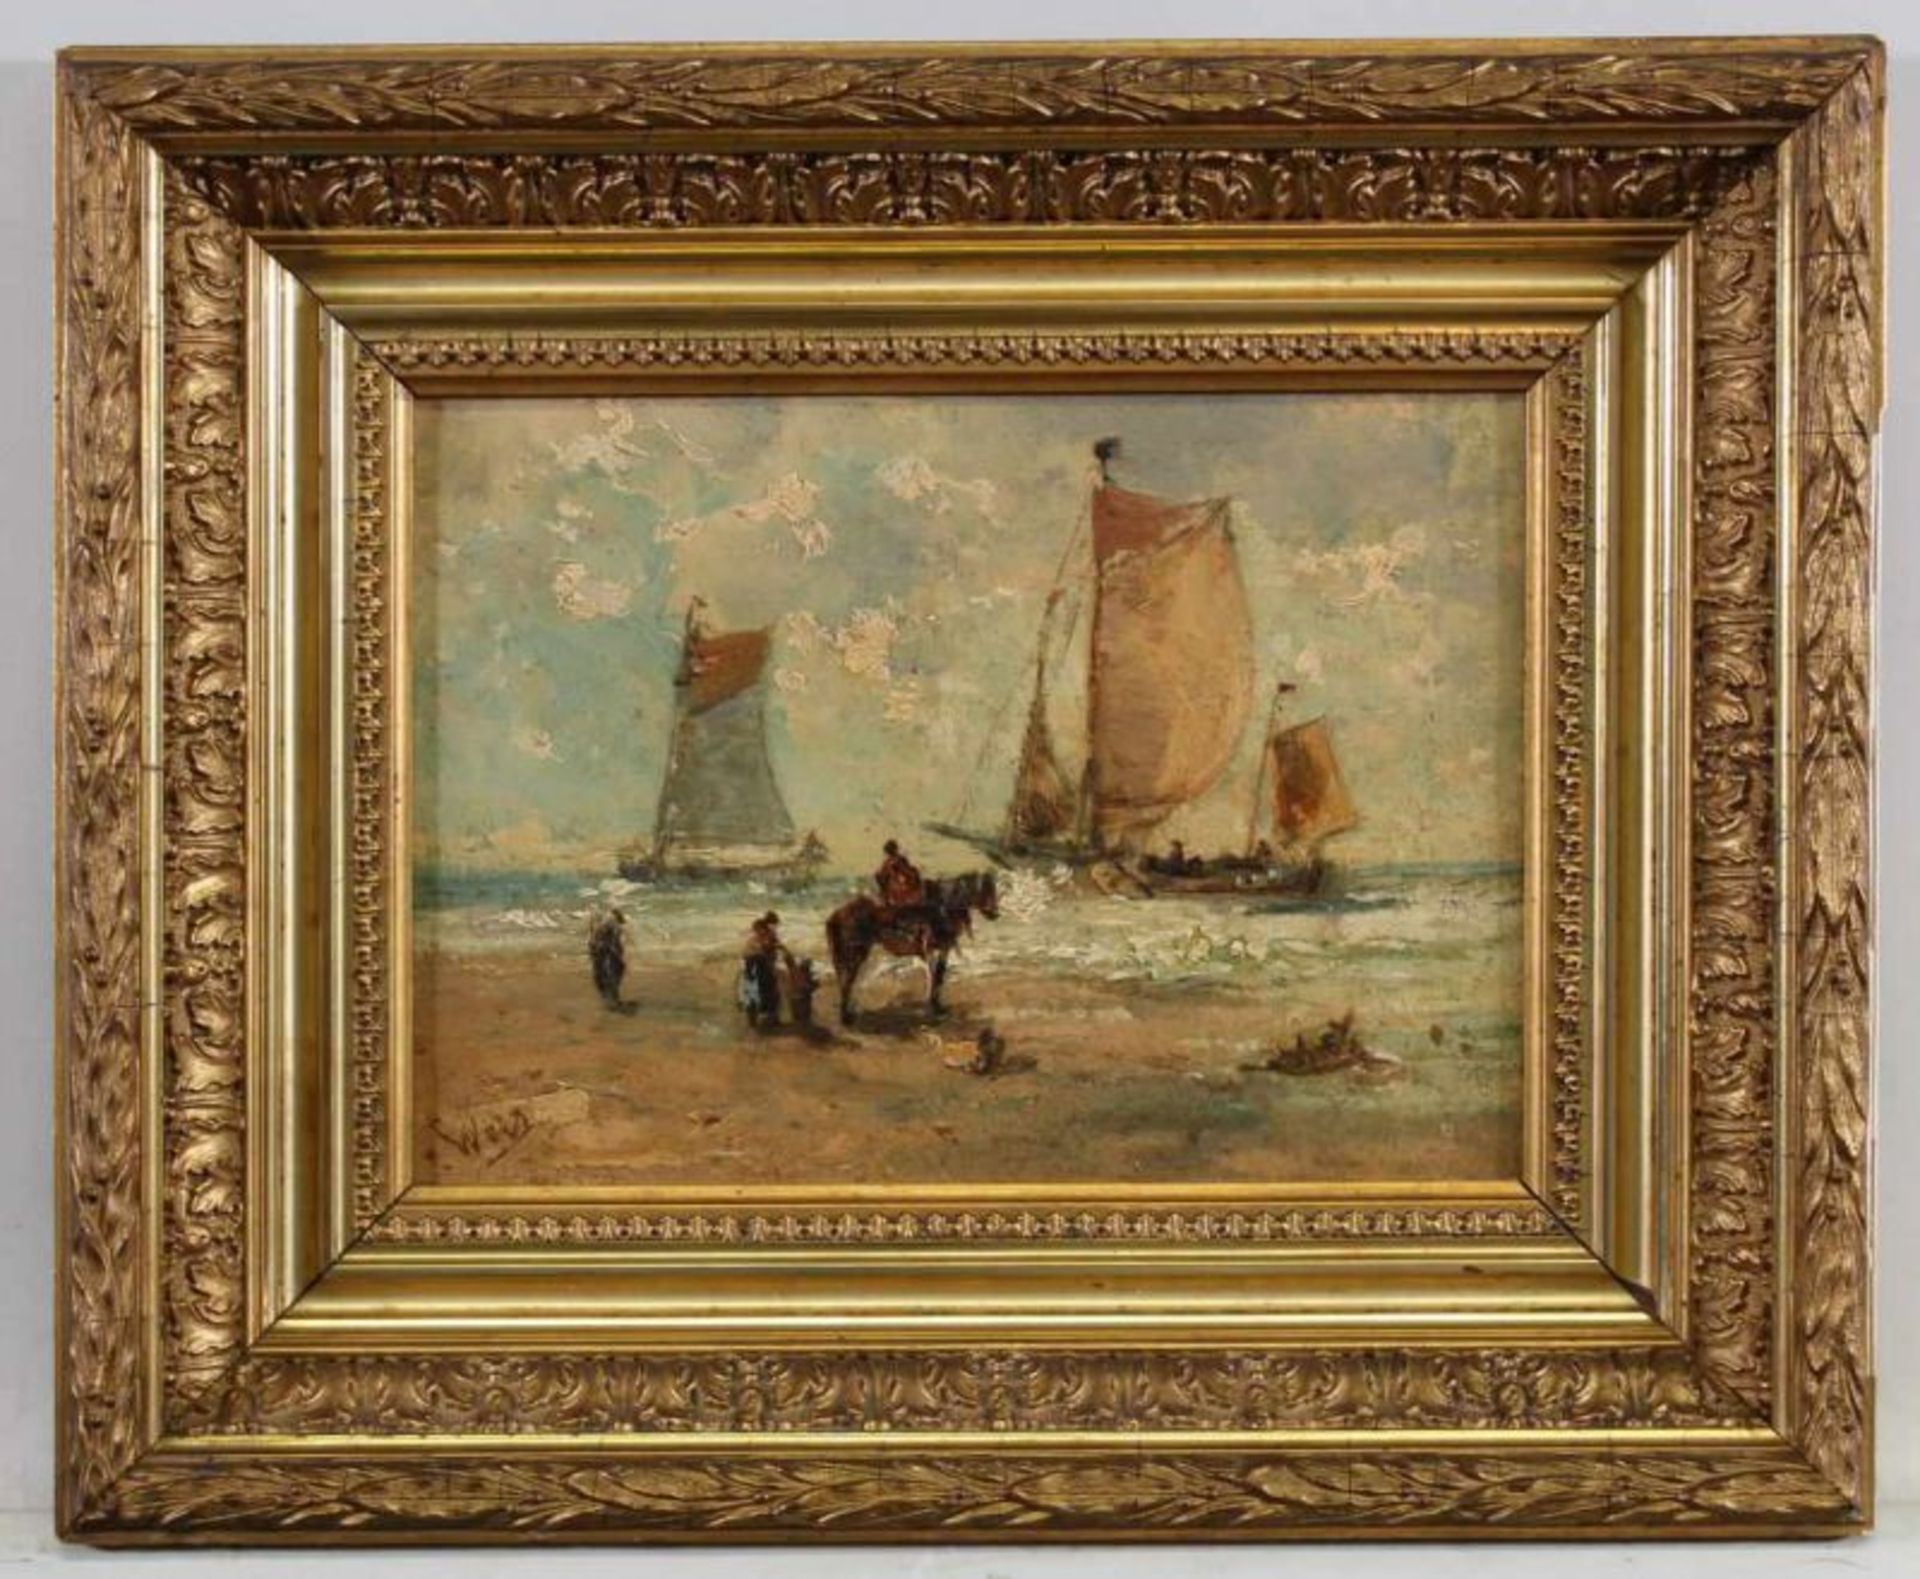 Weiz (19./20. Jh.), "Boote am Strand", Öl auf Holz, signiert unten links Weiz, 20 x 27 cm 20.00 % - Image 2 of 4